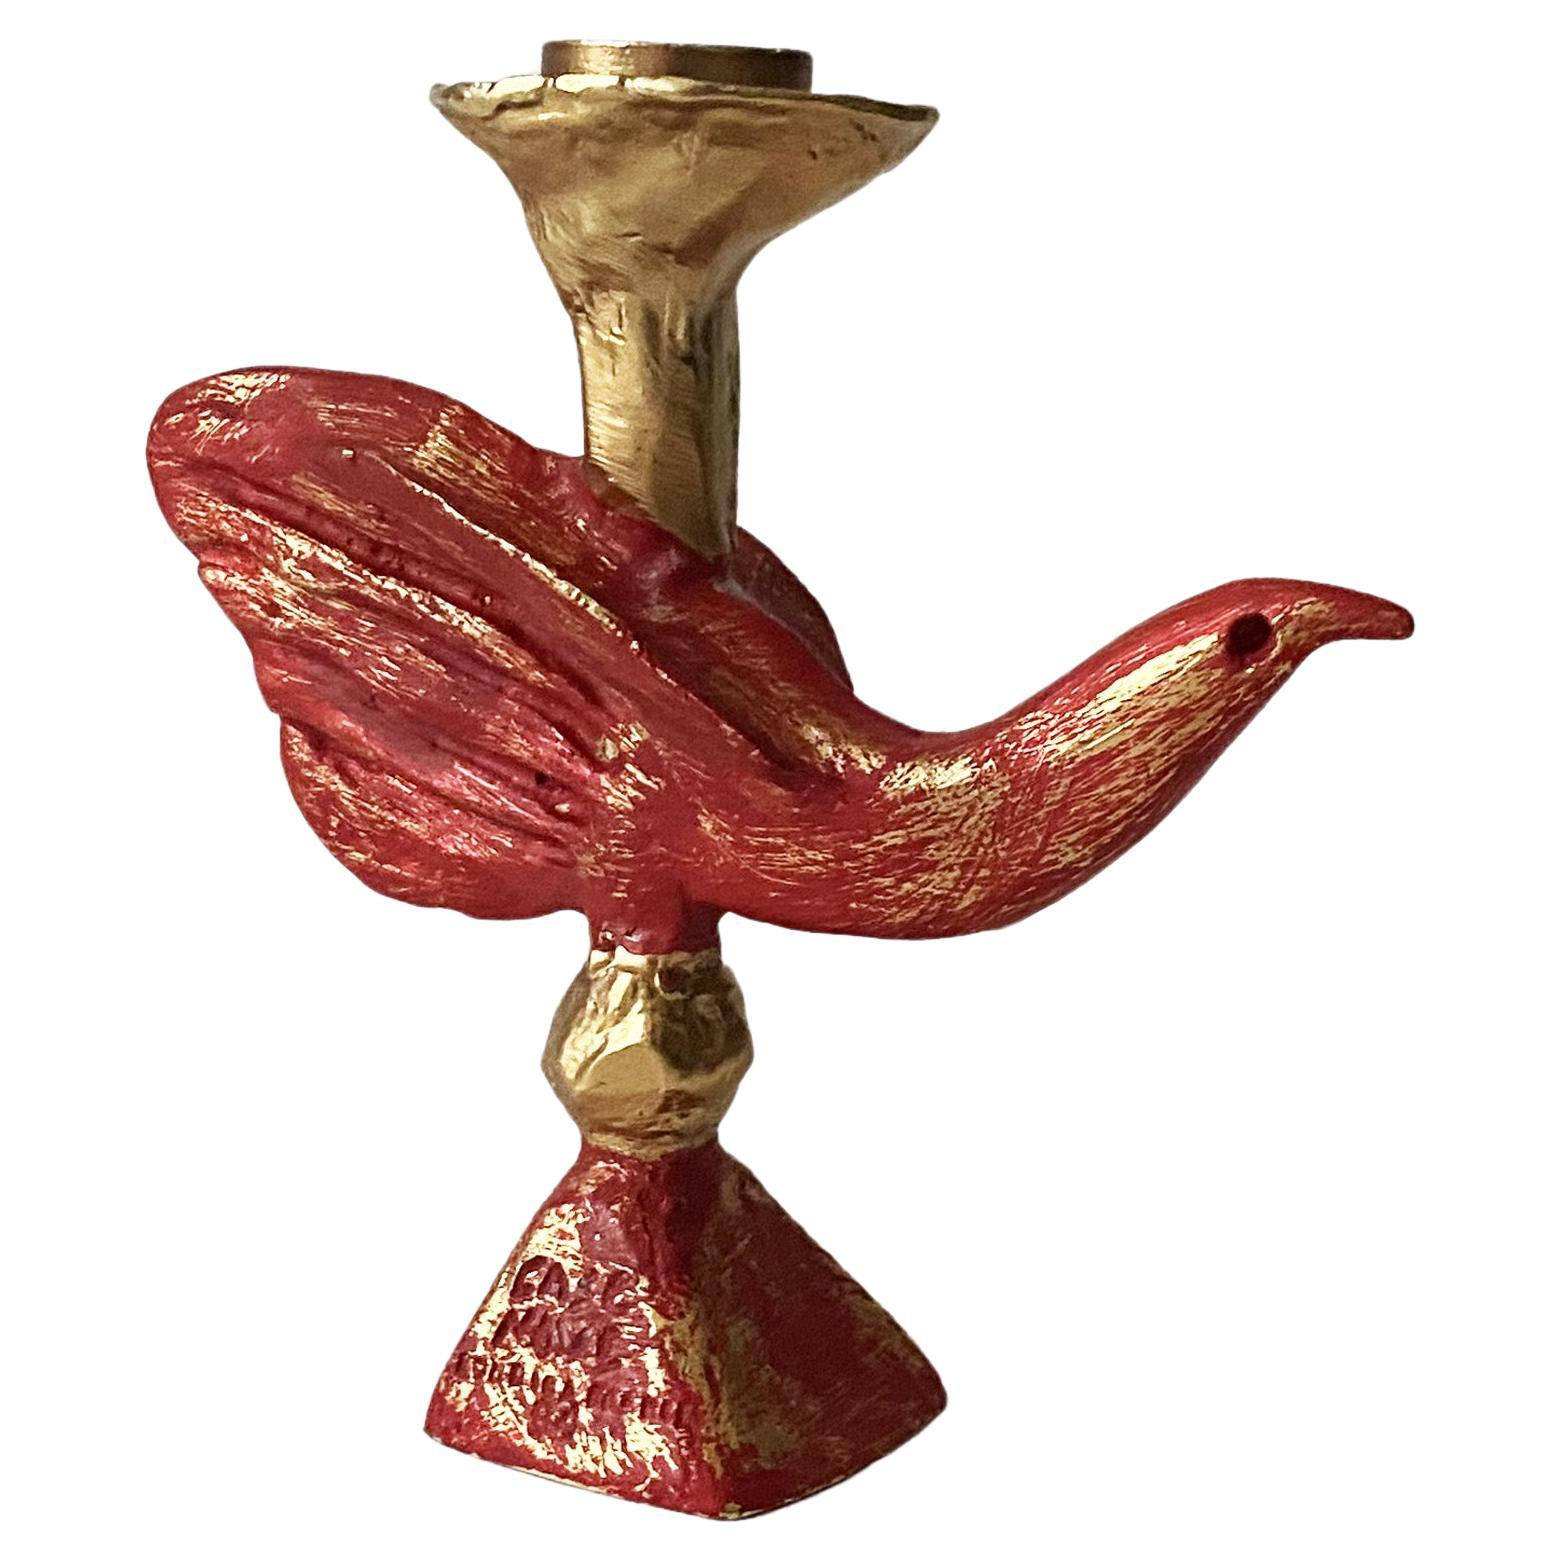 Vergoldeter und roter skulpturaler Vogel-Kerzenleuchter von Pierre Casenove für Fondica, 1990er Jahre.